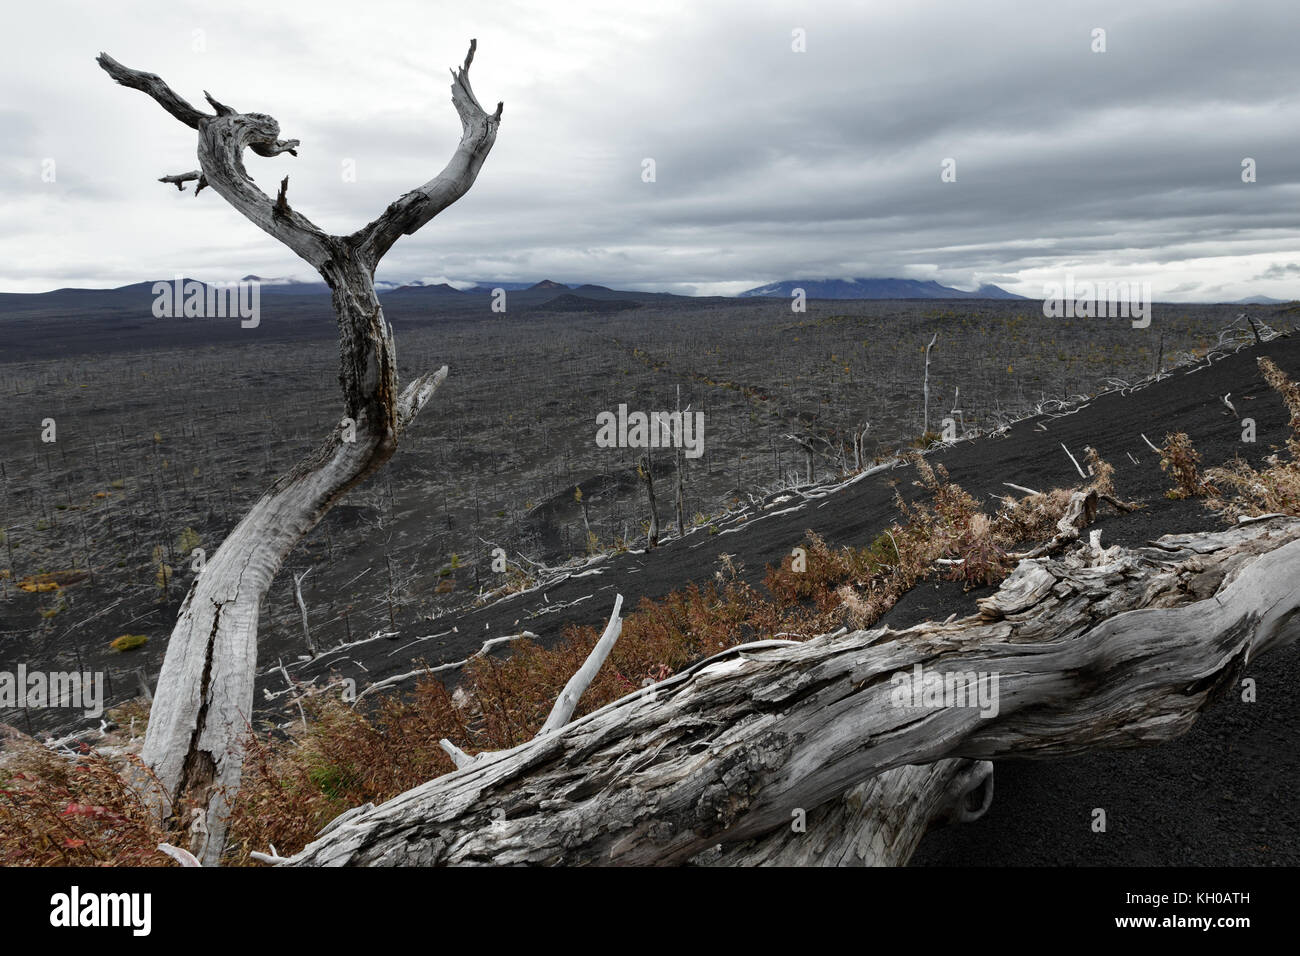 Le paysage volcanique de la péninsule du Kamtchatka : dead forest - conséquence de catastrophes naturelles - Éruptions catastrophiques plosky tolbachik 'plat' Banque D'Images